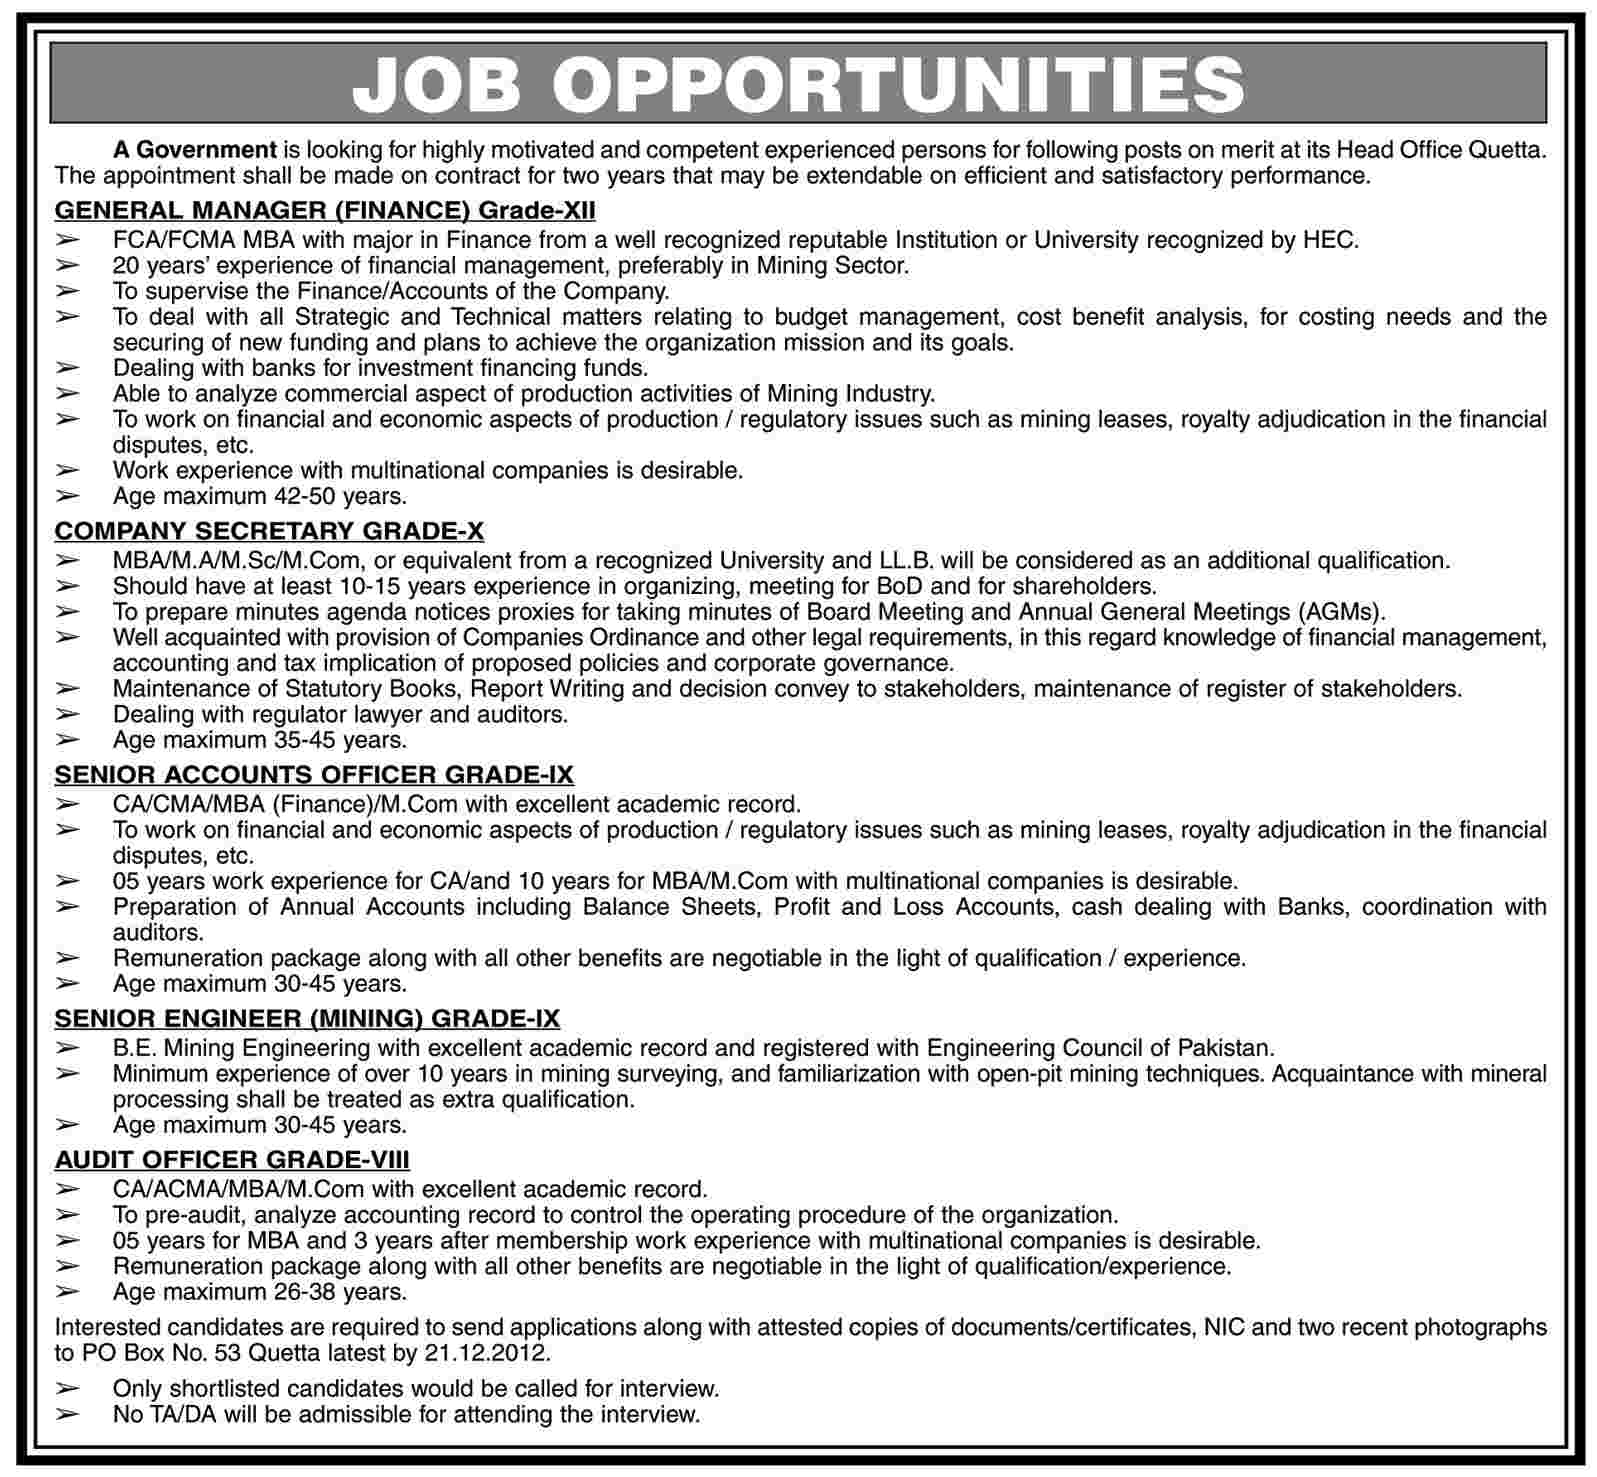 Jobs in Government Organization PO Box 53 Quetta